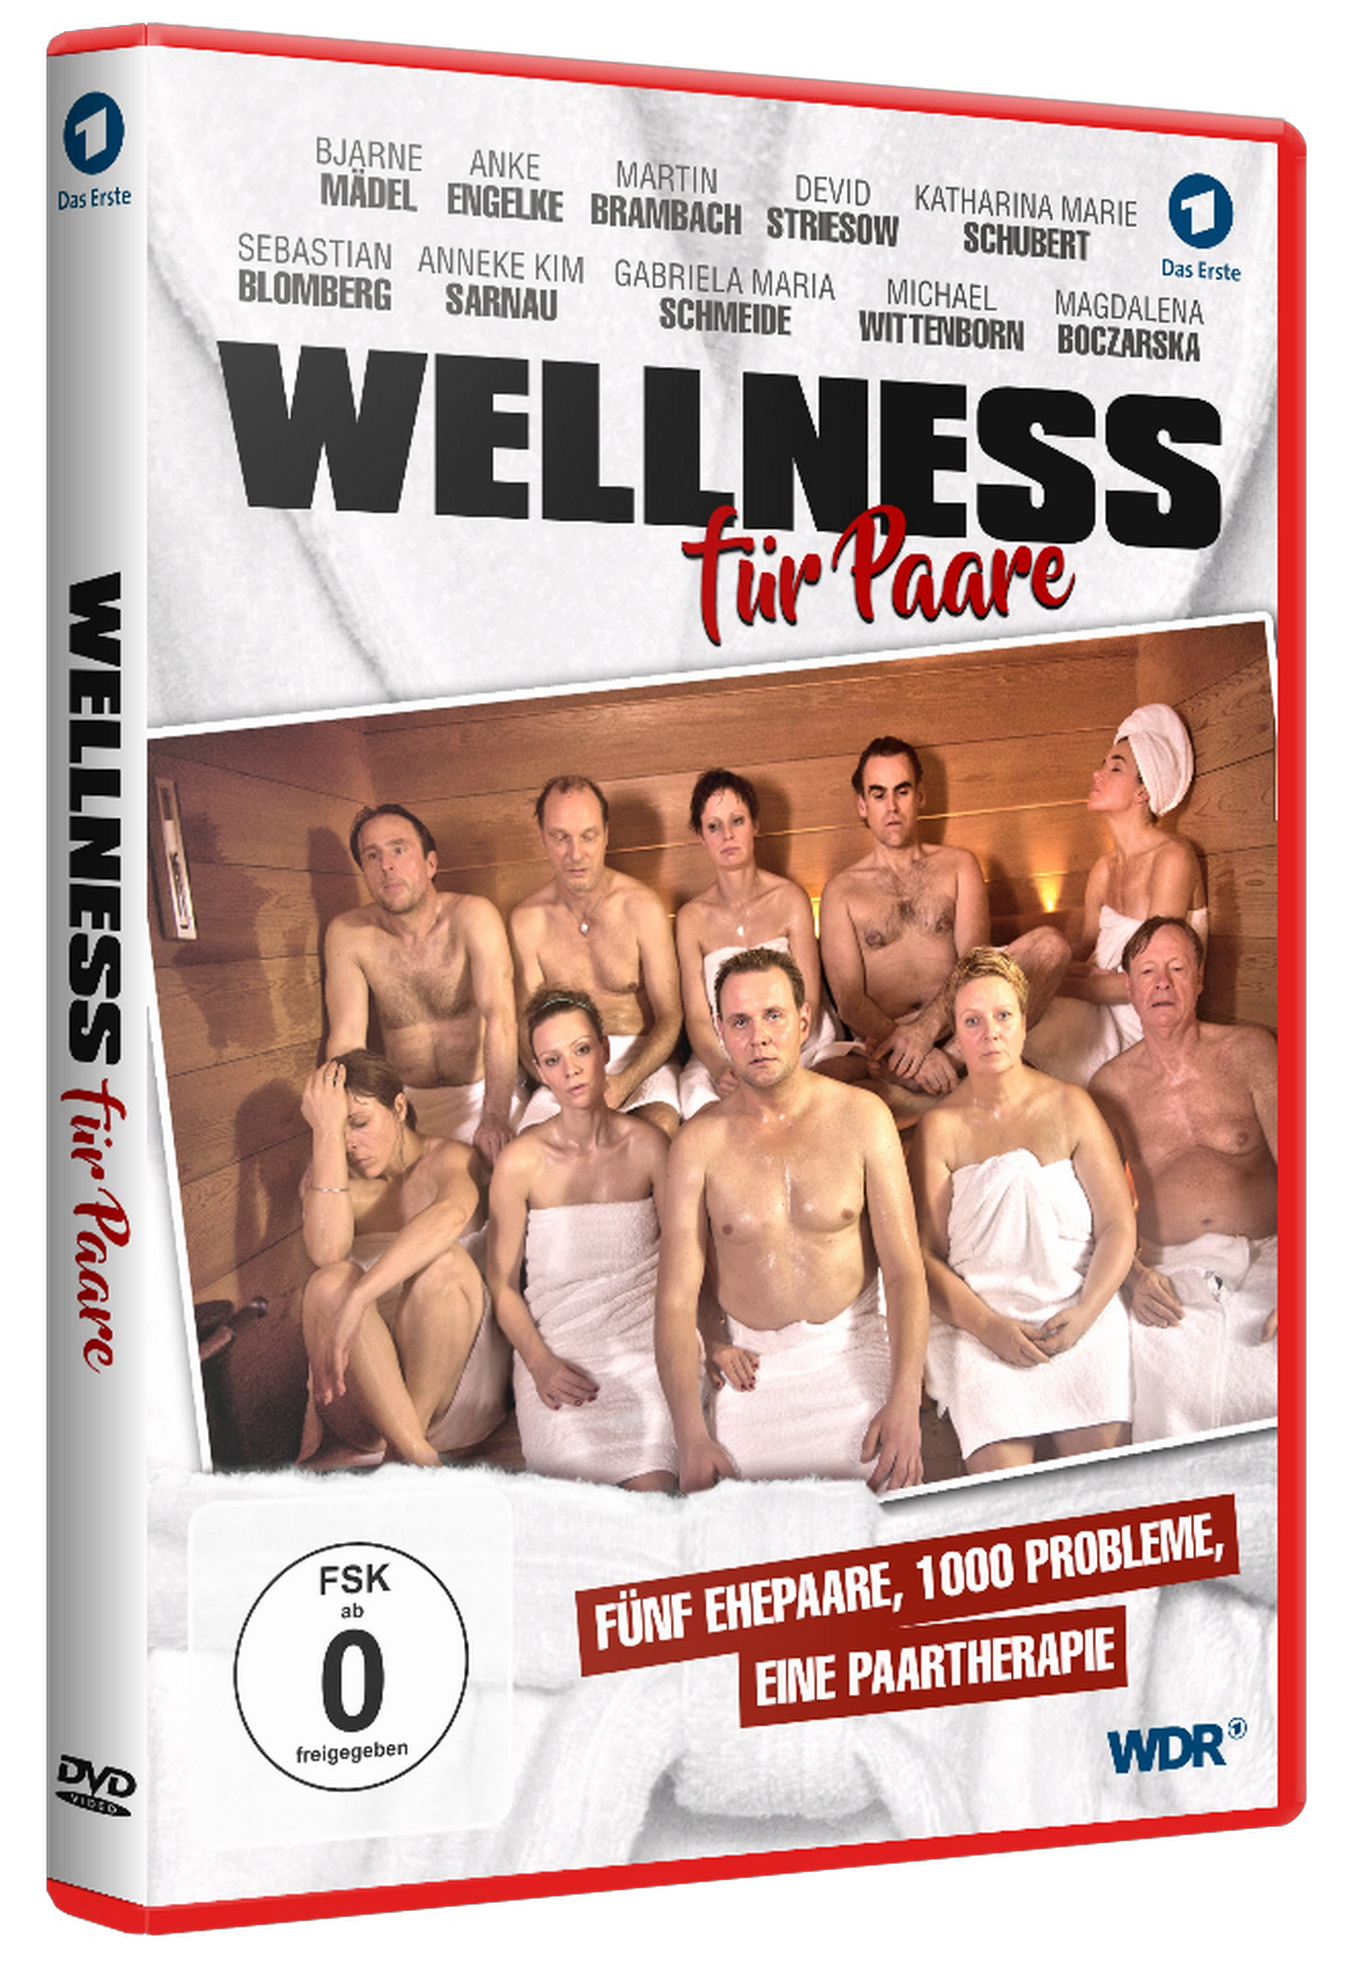 DVD Für Paare Wellness